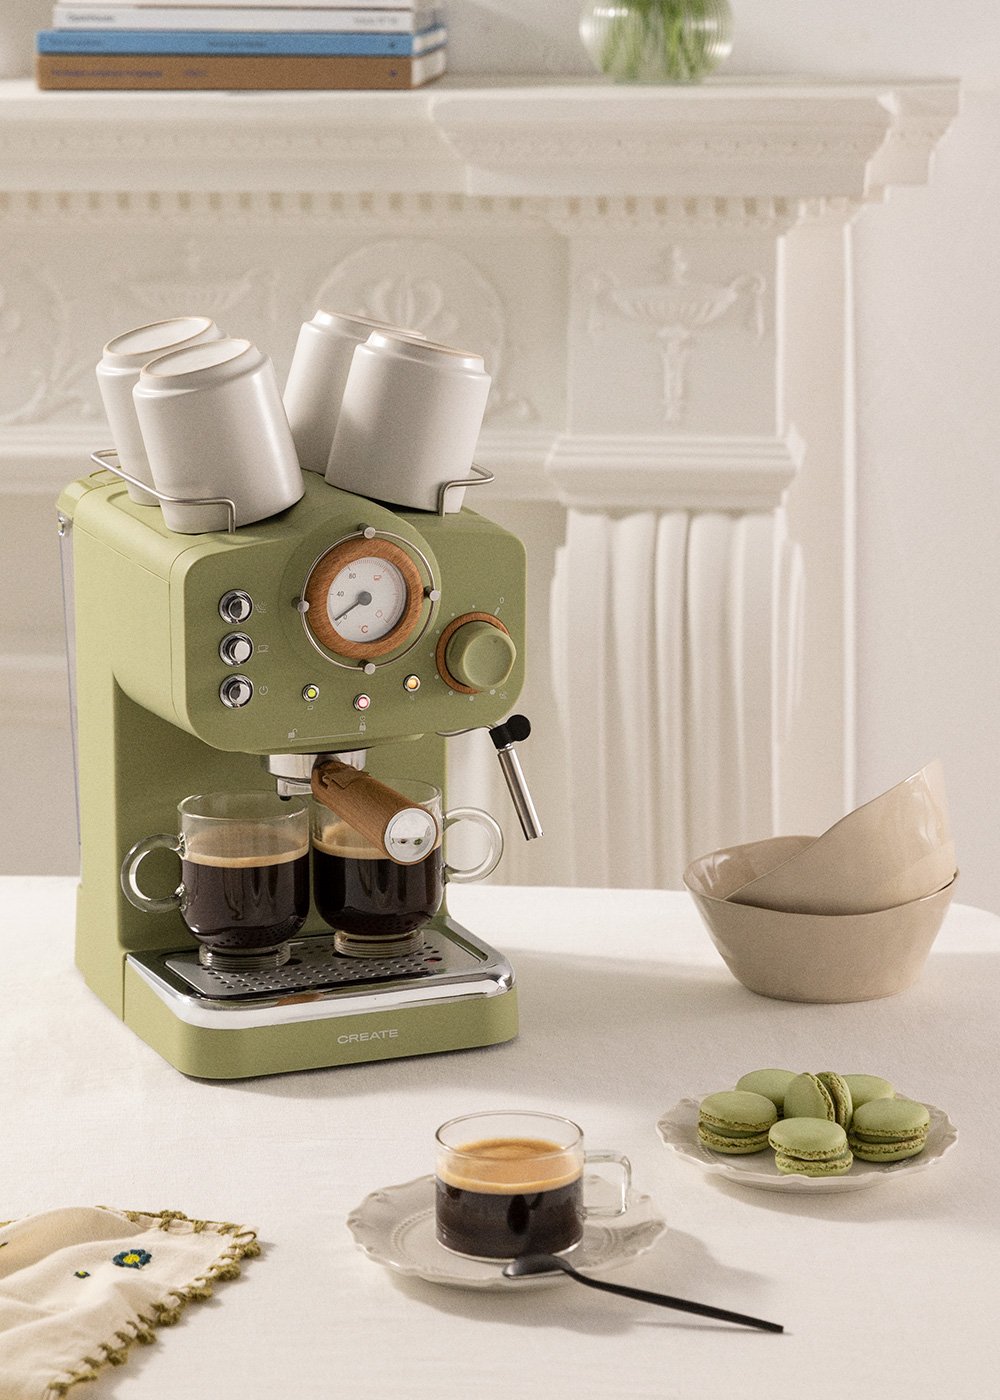 THERA RETRO - Espresso coffee maker - Create